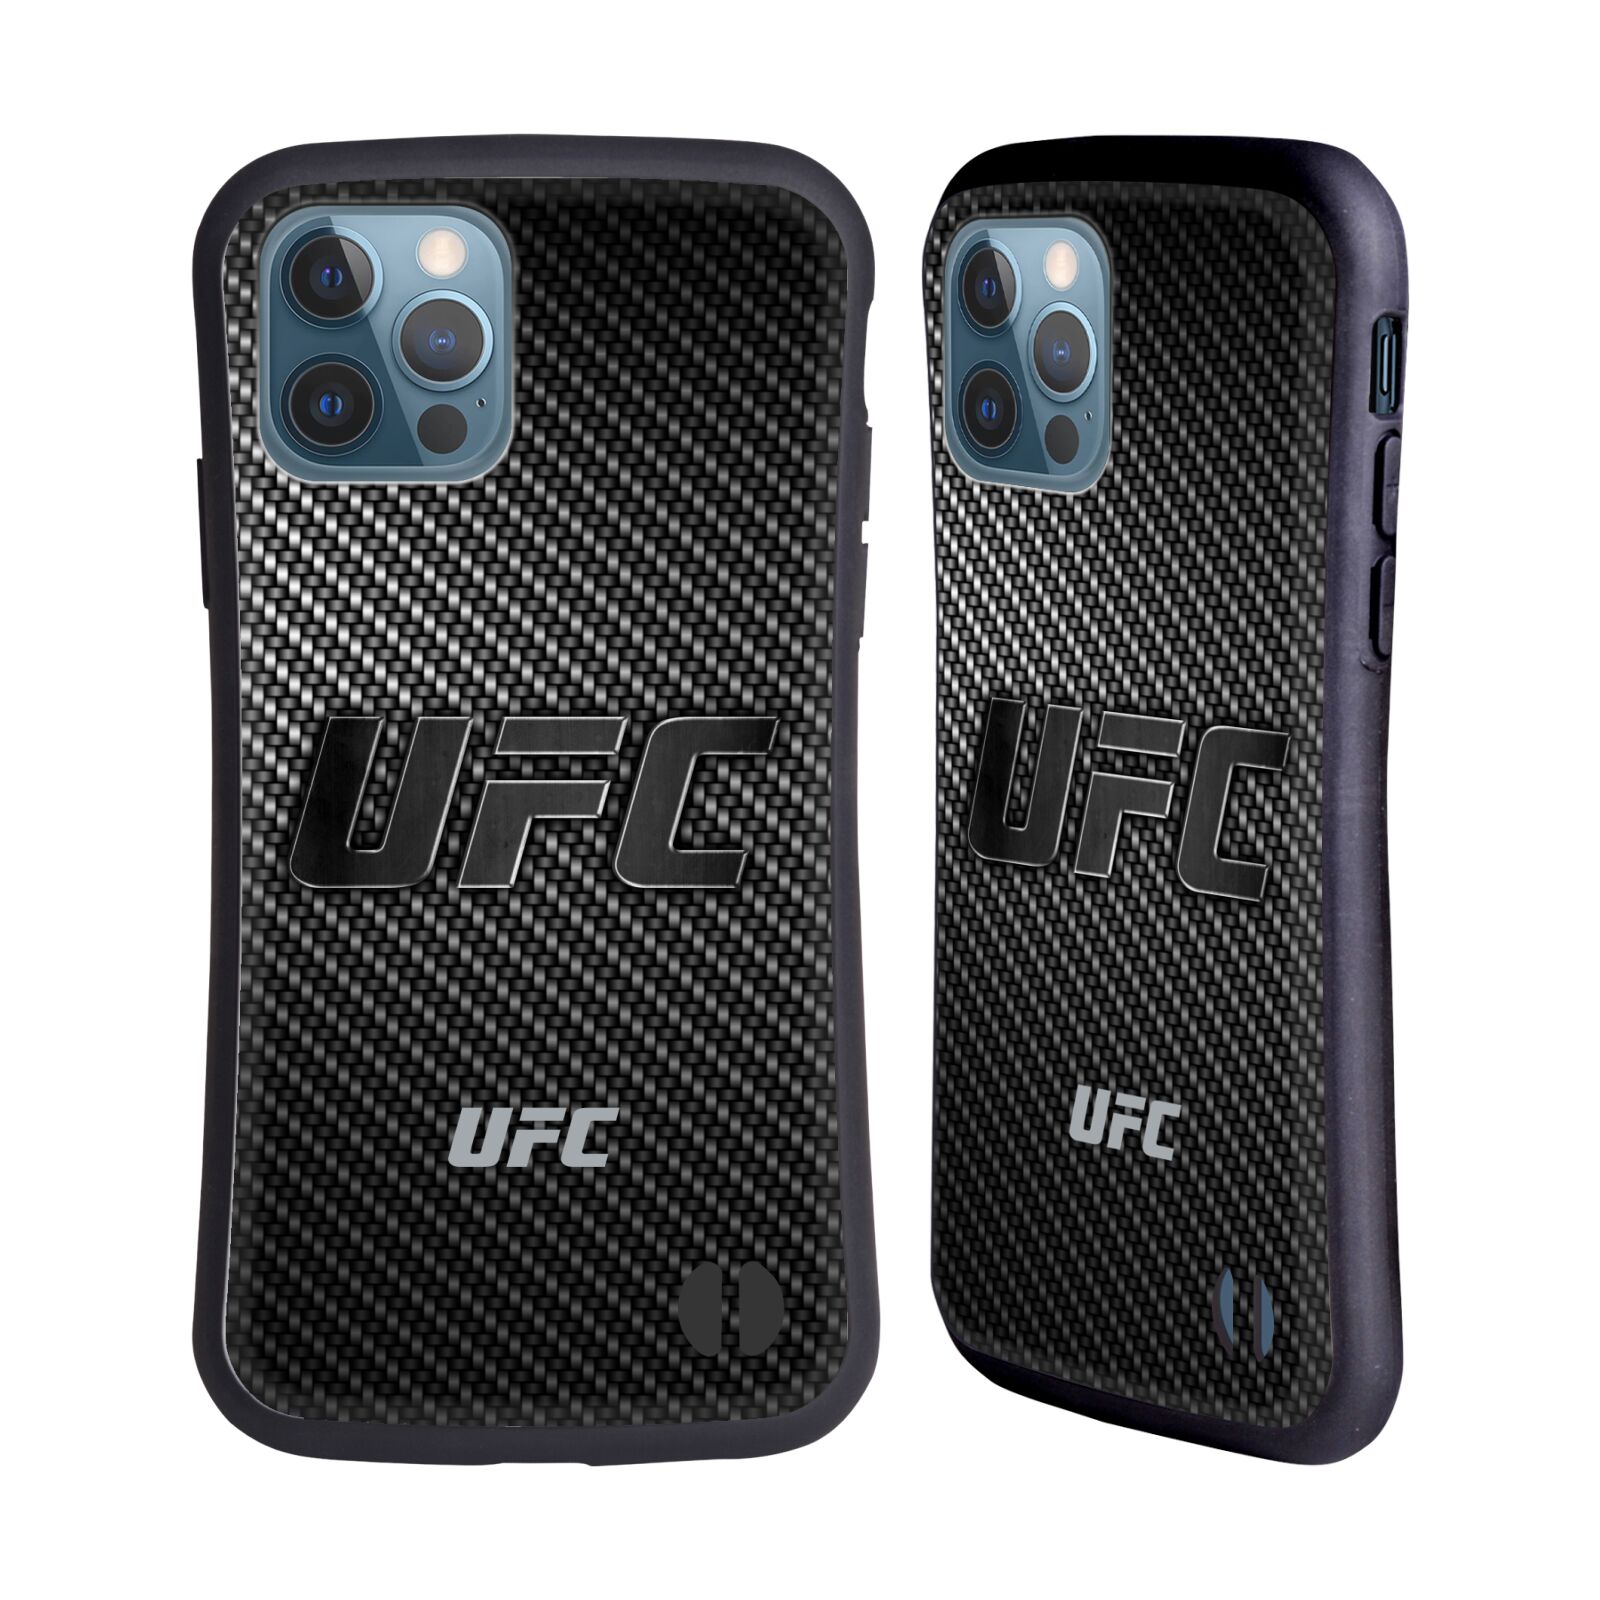 Odolný zadní obal pro mobil Apple iPhone 12 / iPhone 12 Pro - HEAD CASE - UFC - Imitace karbonu